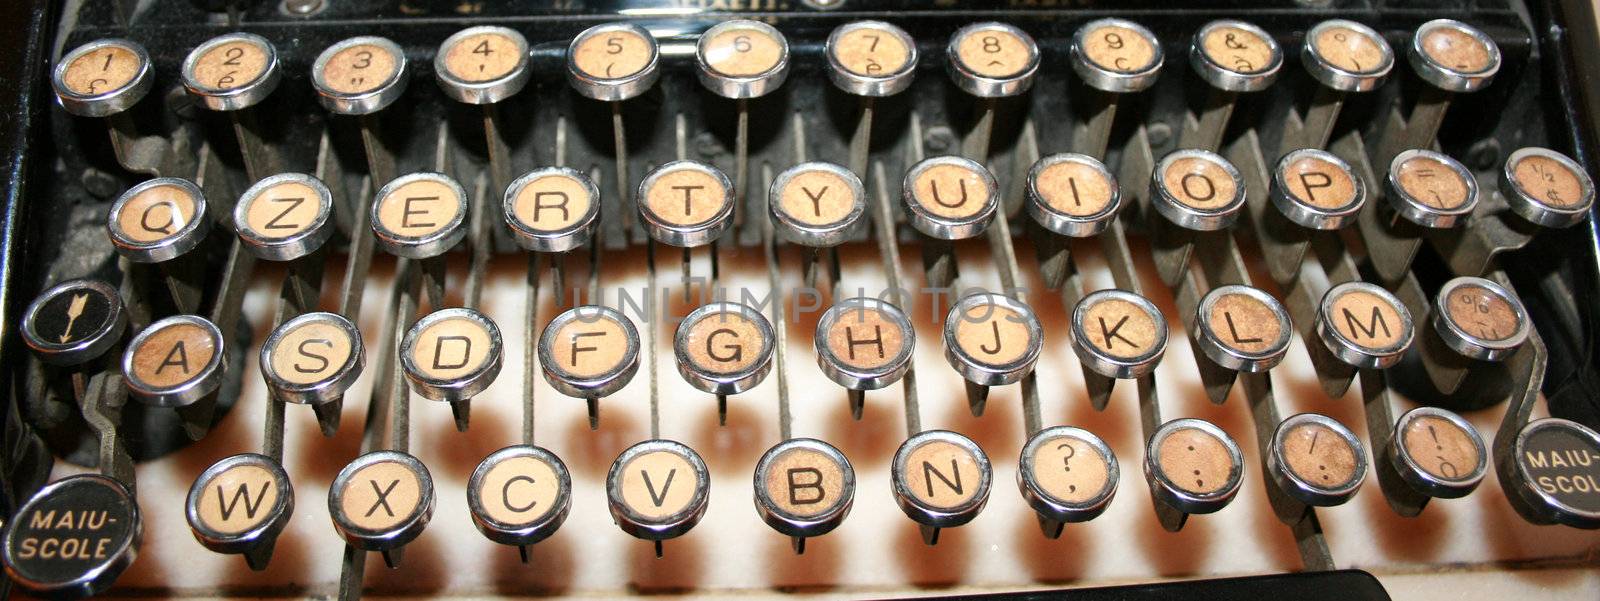 vintage and old typewriter keys